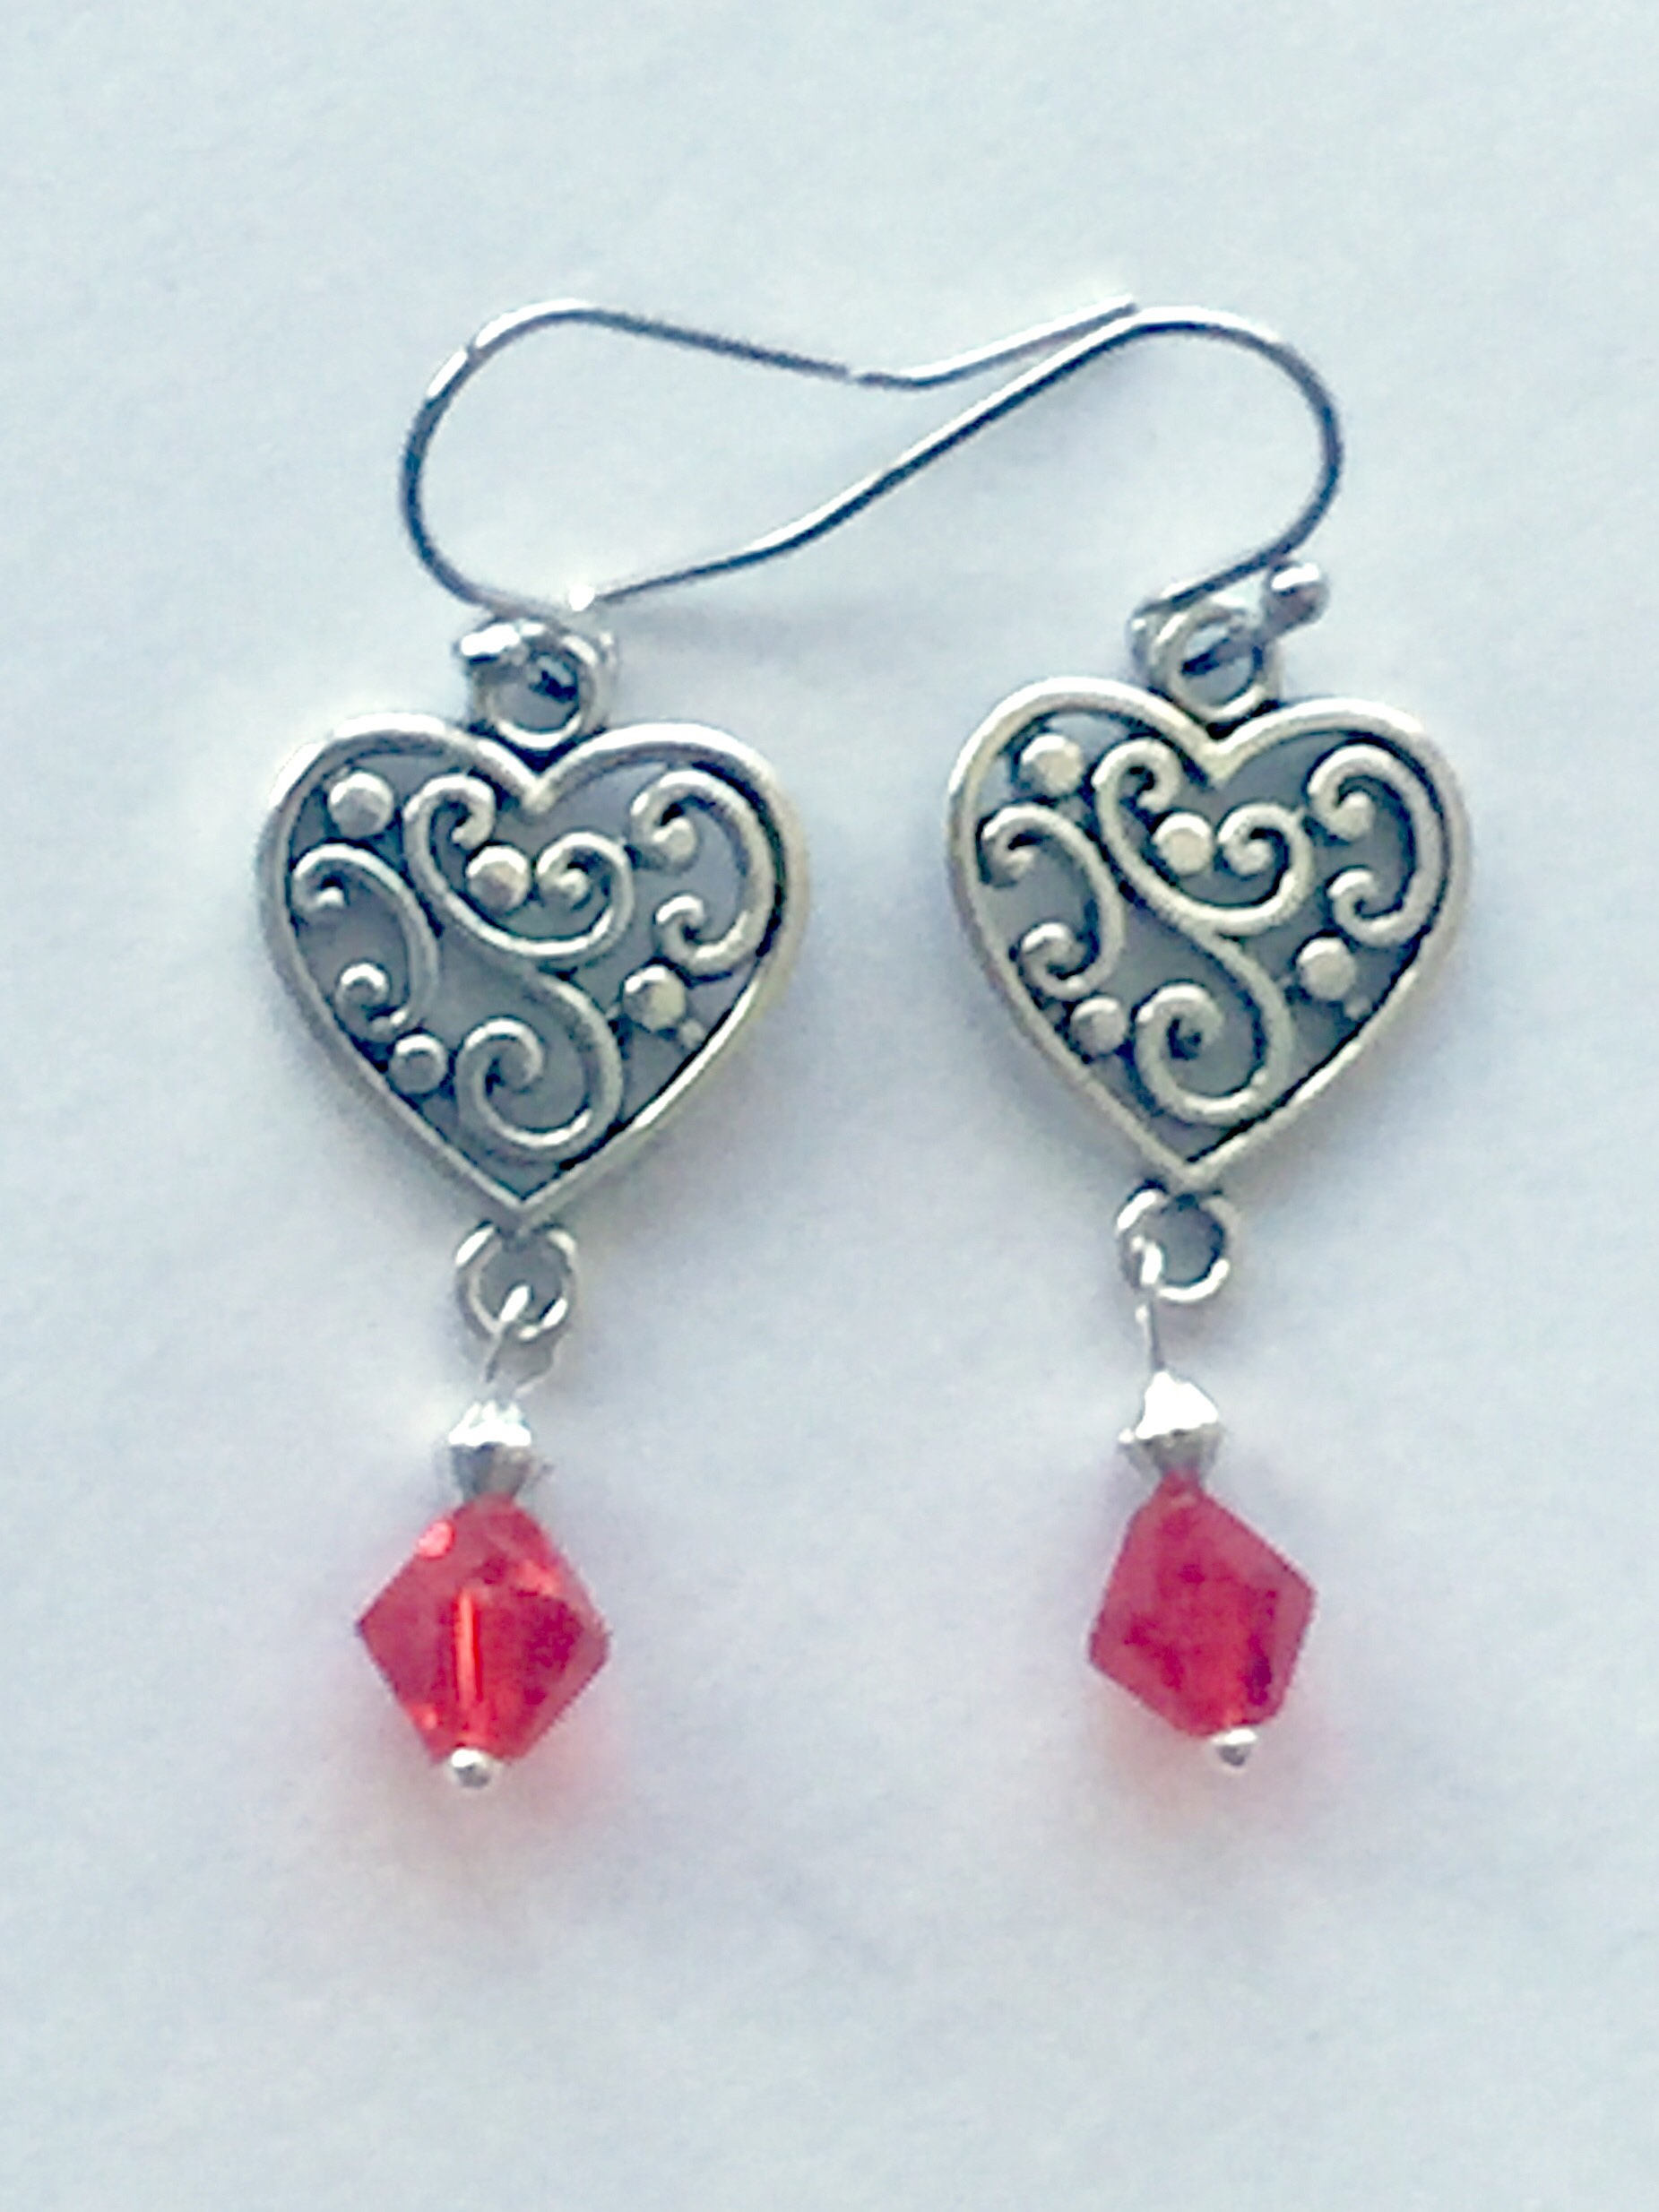 I Love You Earrings Valentine's Day Earrings Engraved - Etsy UK